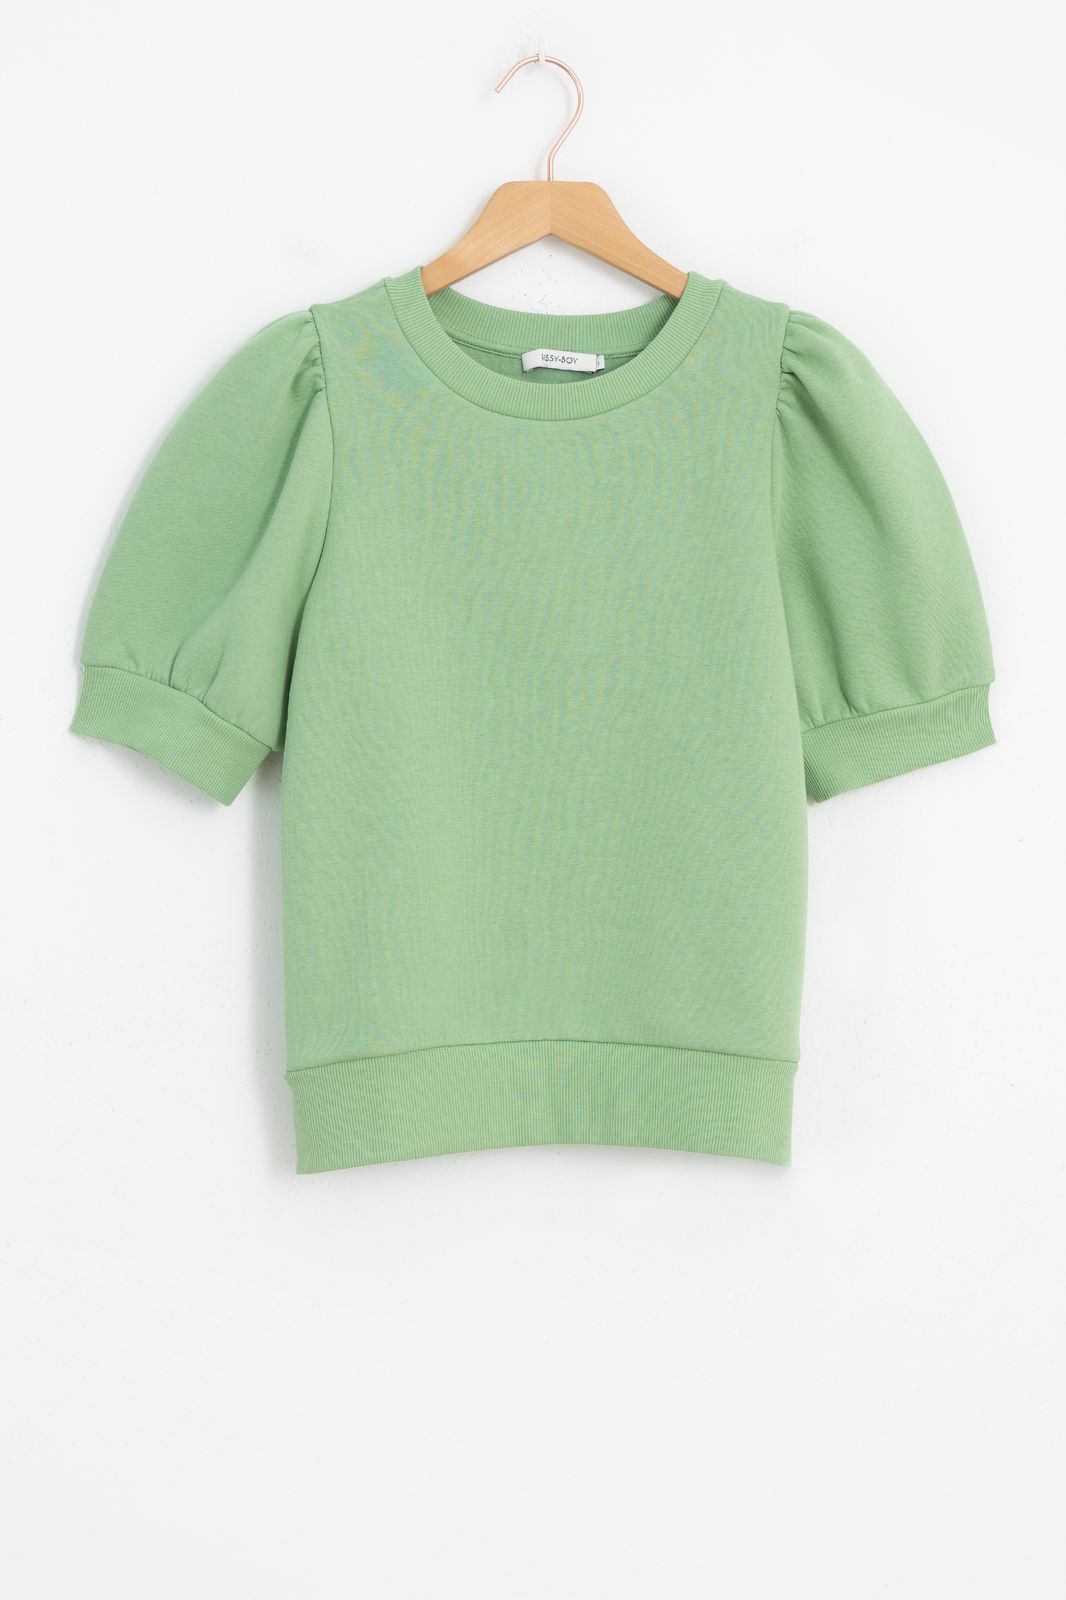 Sweater mit Puffärmeln - grün